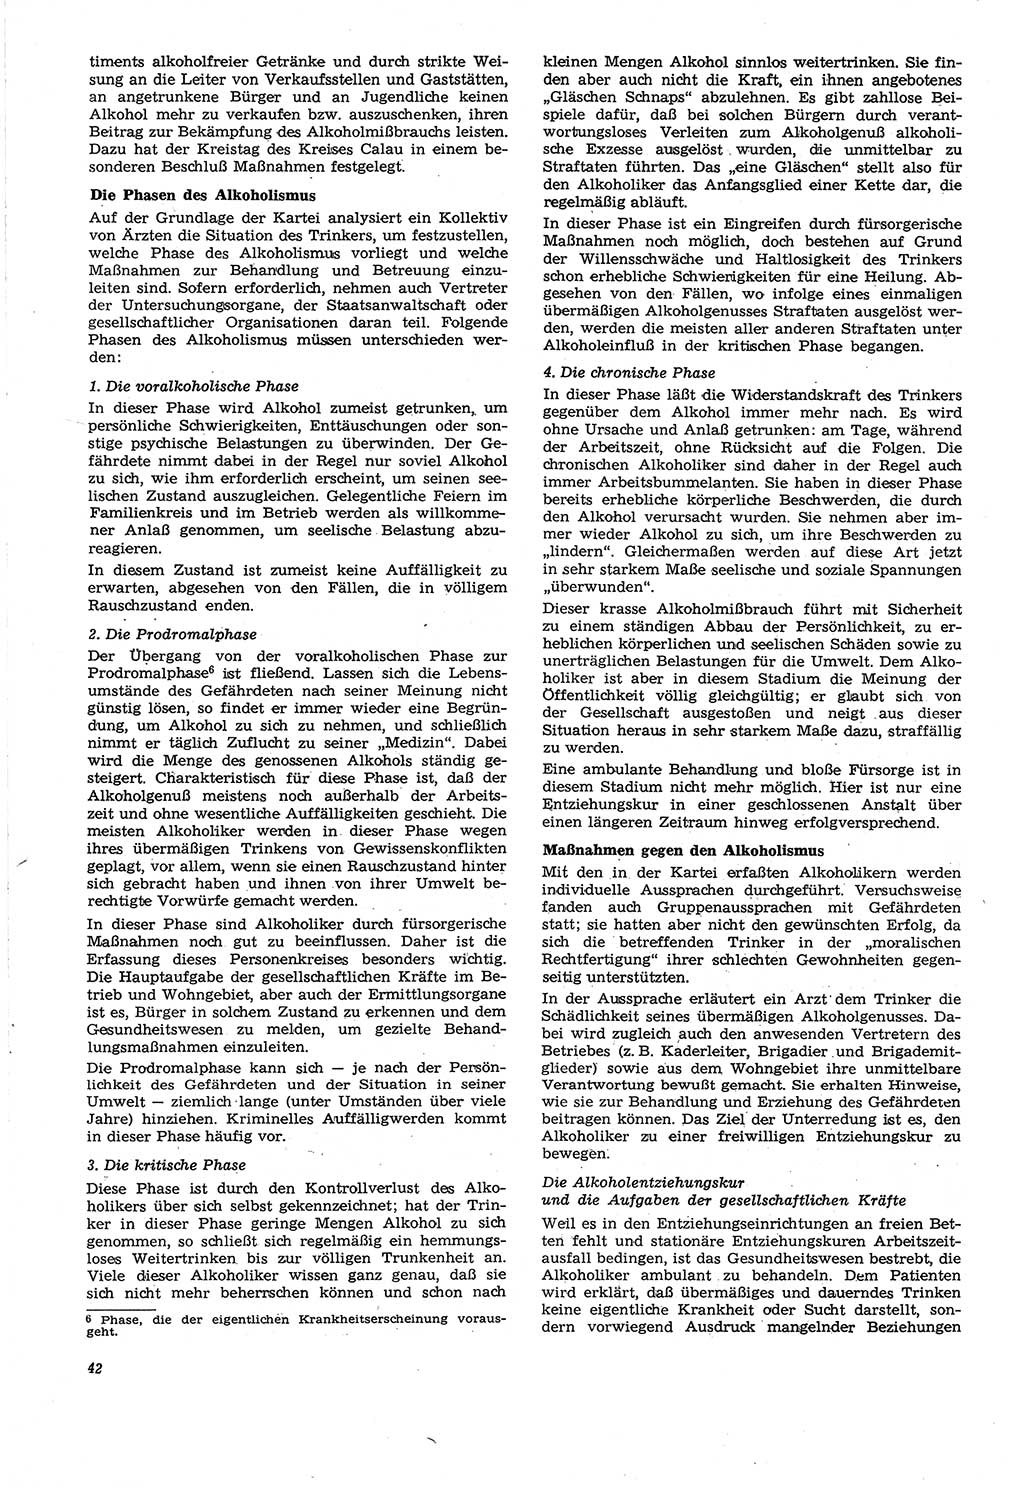 Neue Justiz (NJ), Zeitschrift für Recht und Rechtswissenschaft [Deutsche Demokratische Republik (DDR)], 21. Jahrgang 1967, Seite 42 (NJ DDR 1967, S. 42)